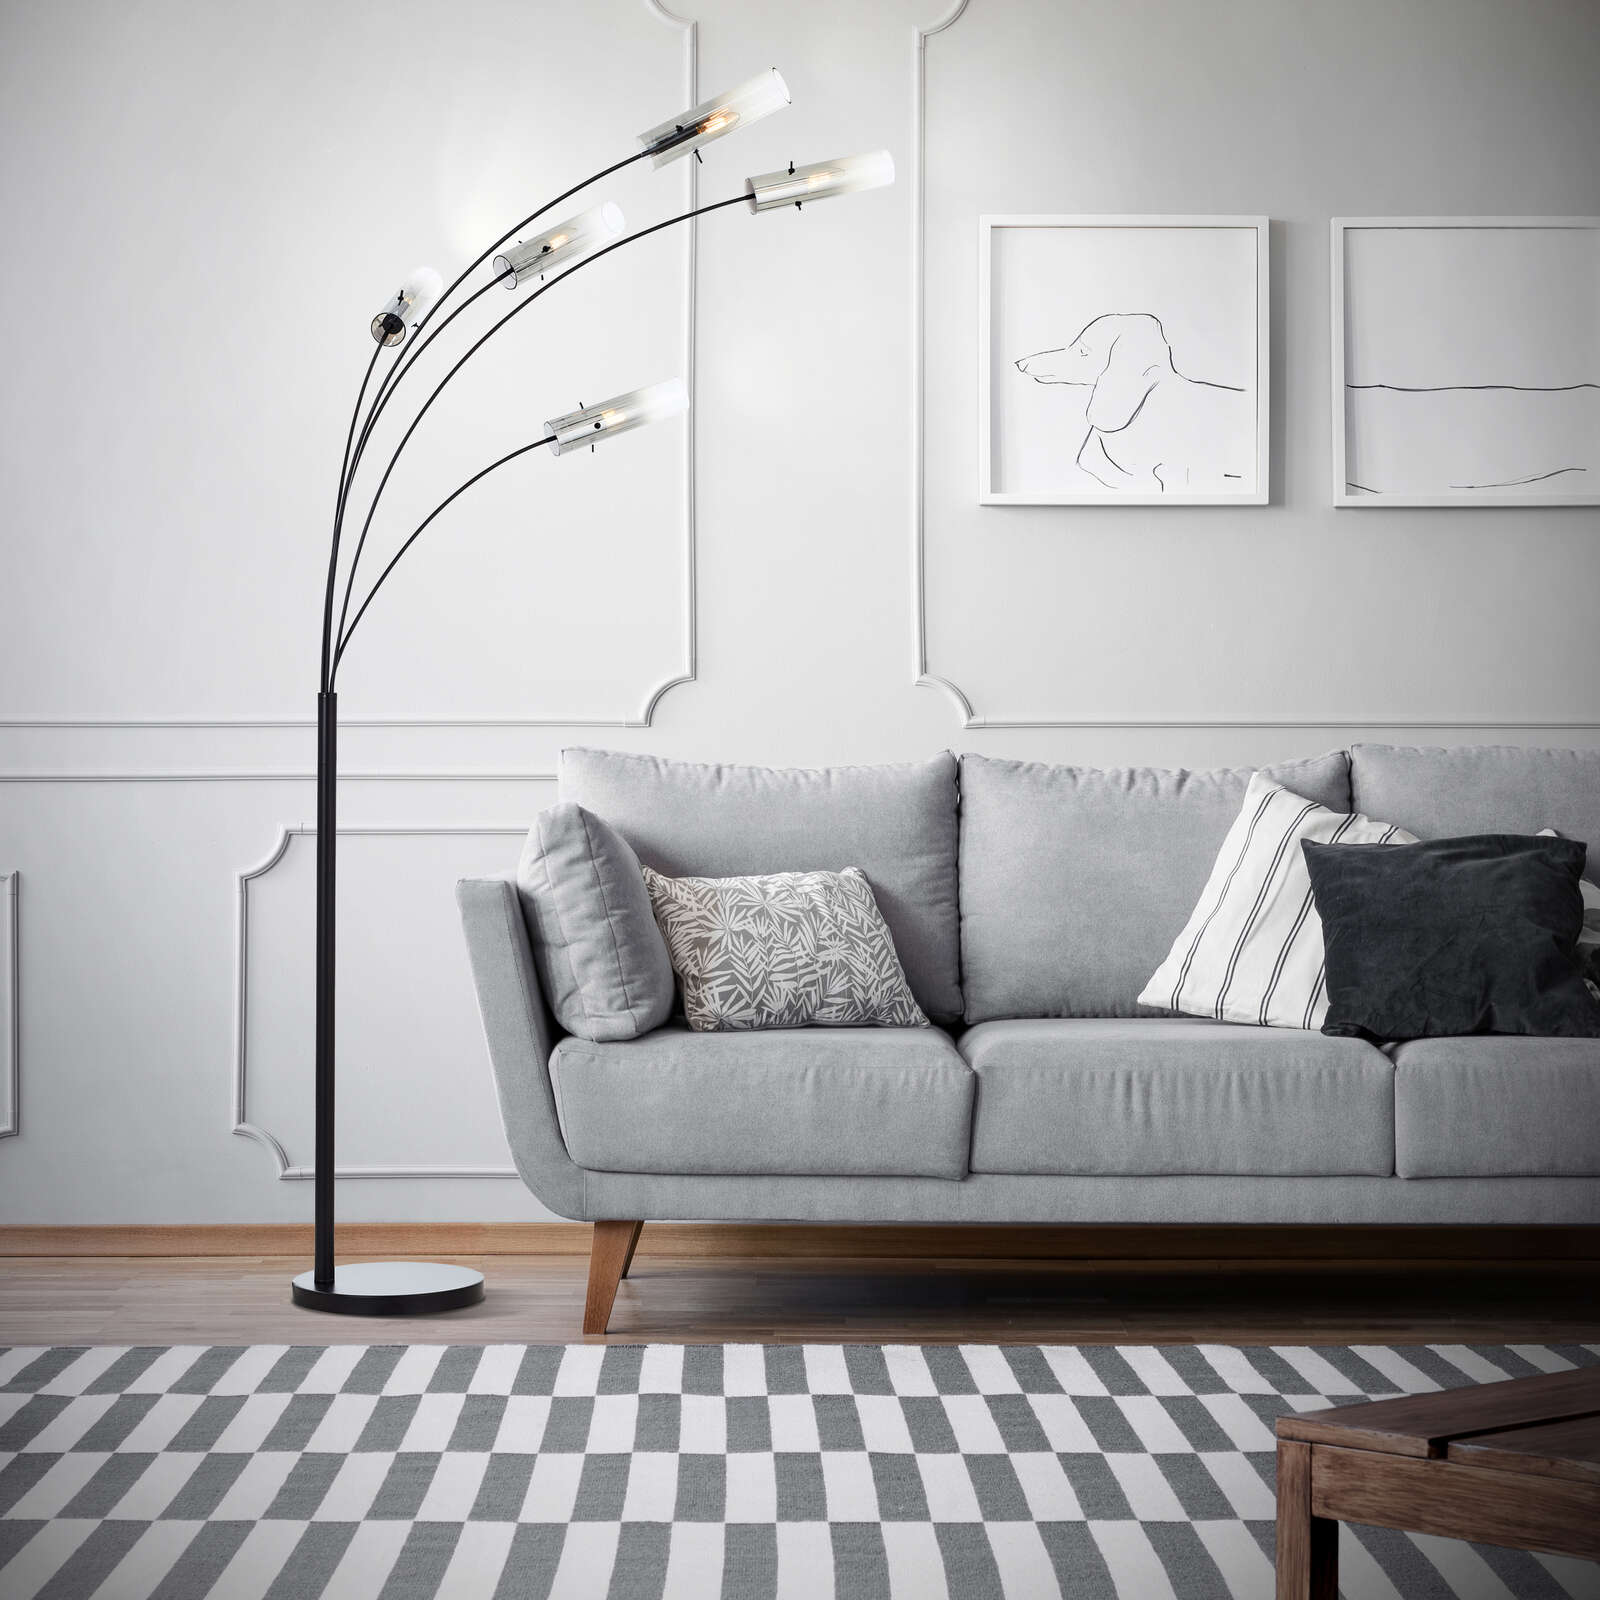             Metal floor lamp - Hilla 2 - Grey
        